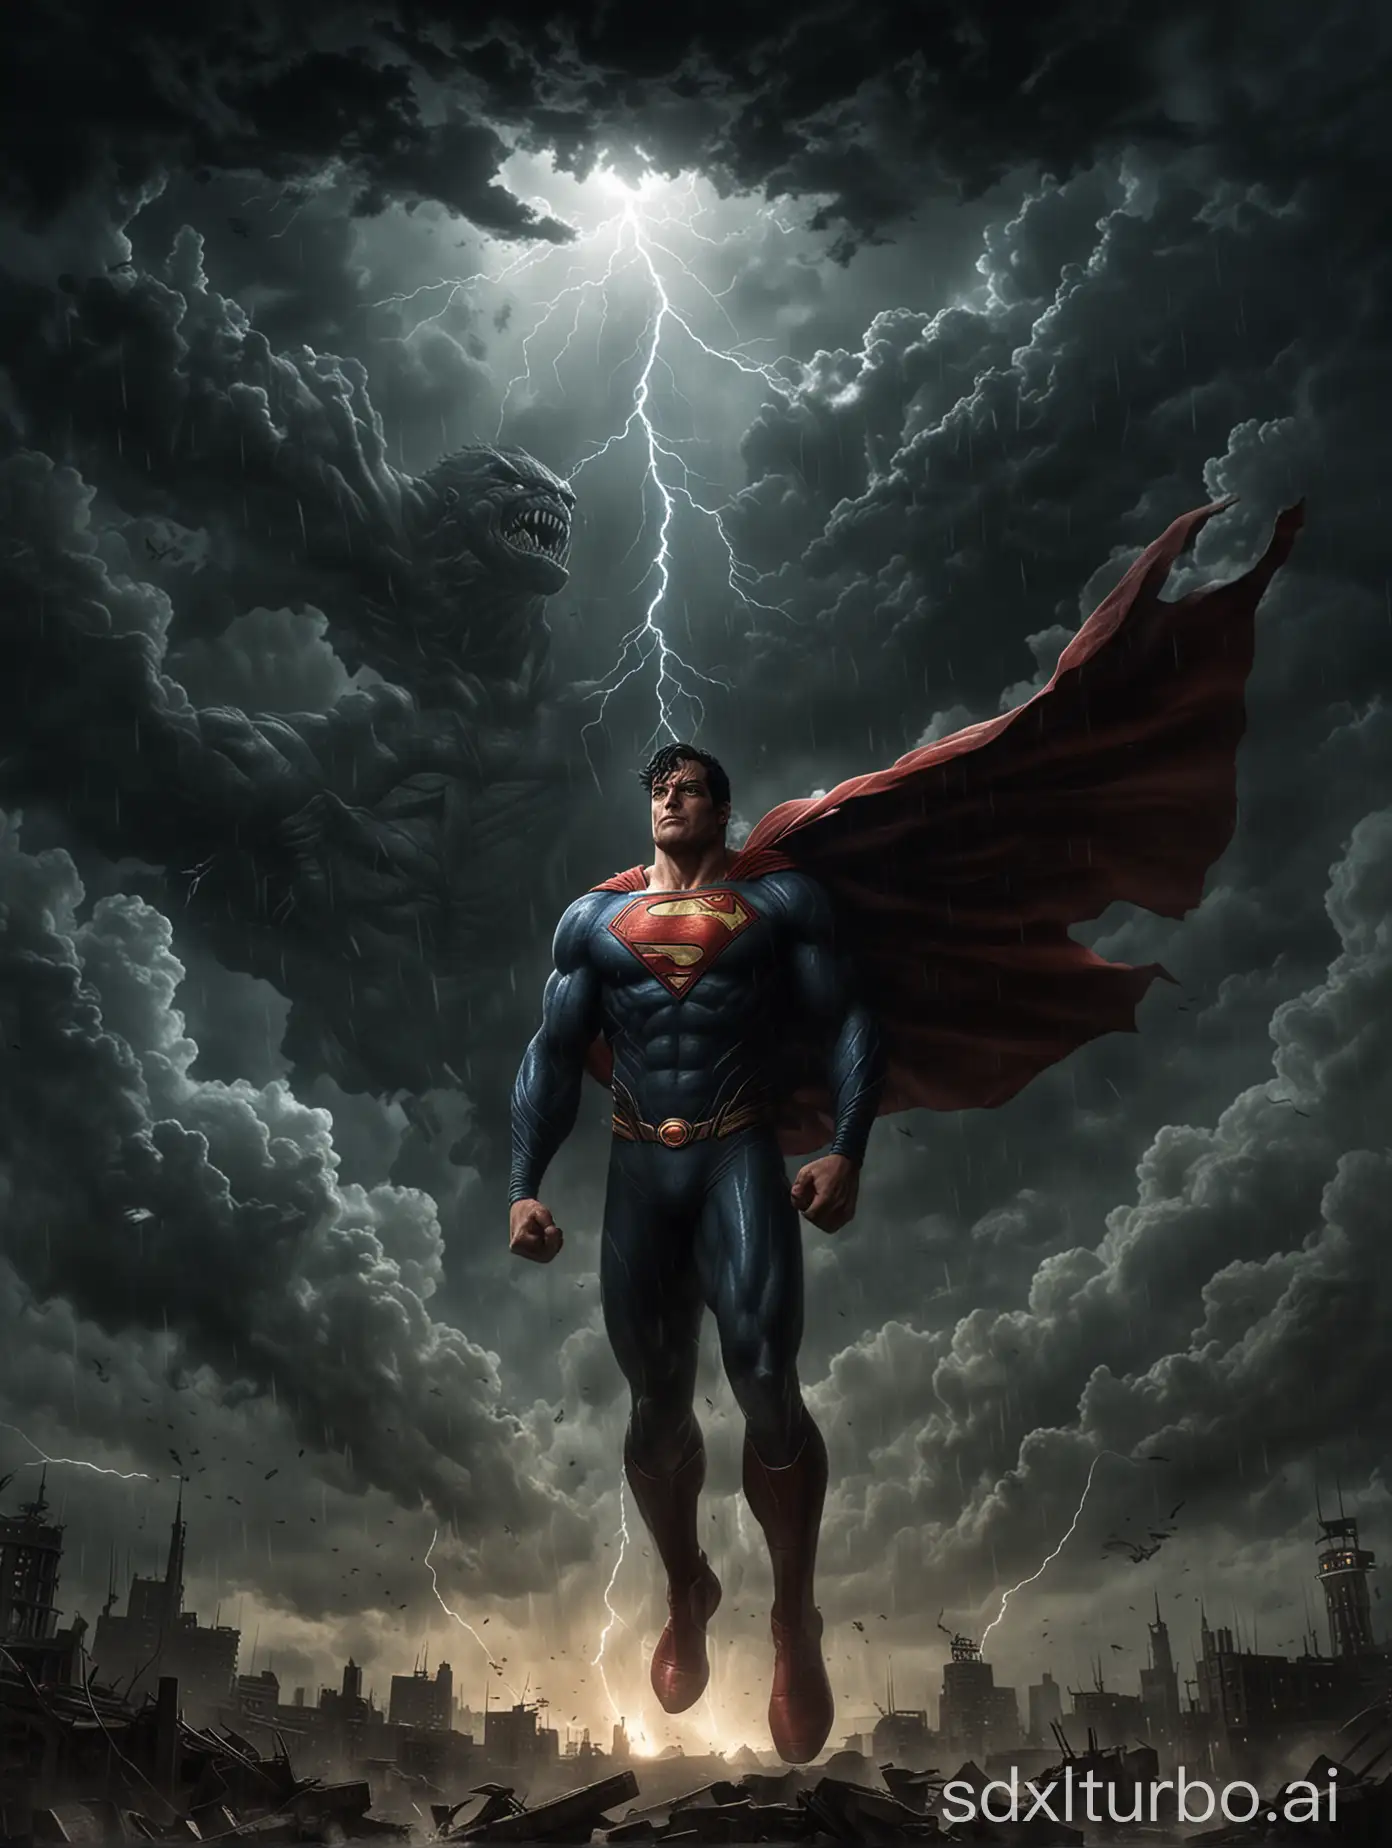 Epic-Battle-Superman-Confronts-Monstrous-Forces-Amidst-Dark-Storm